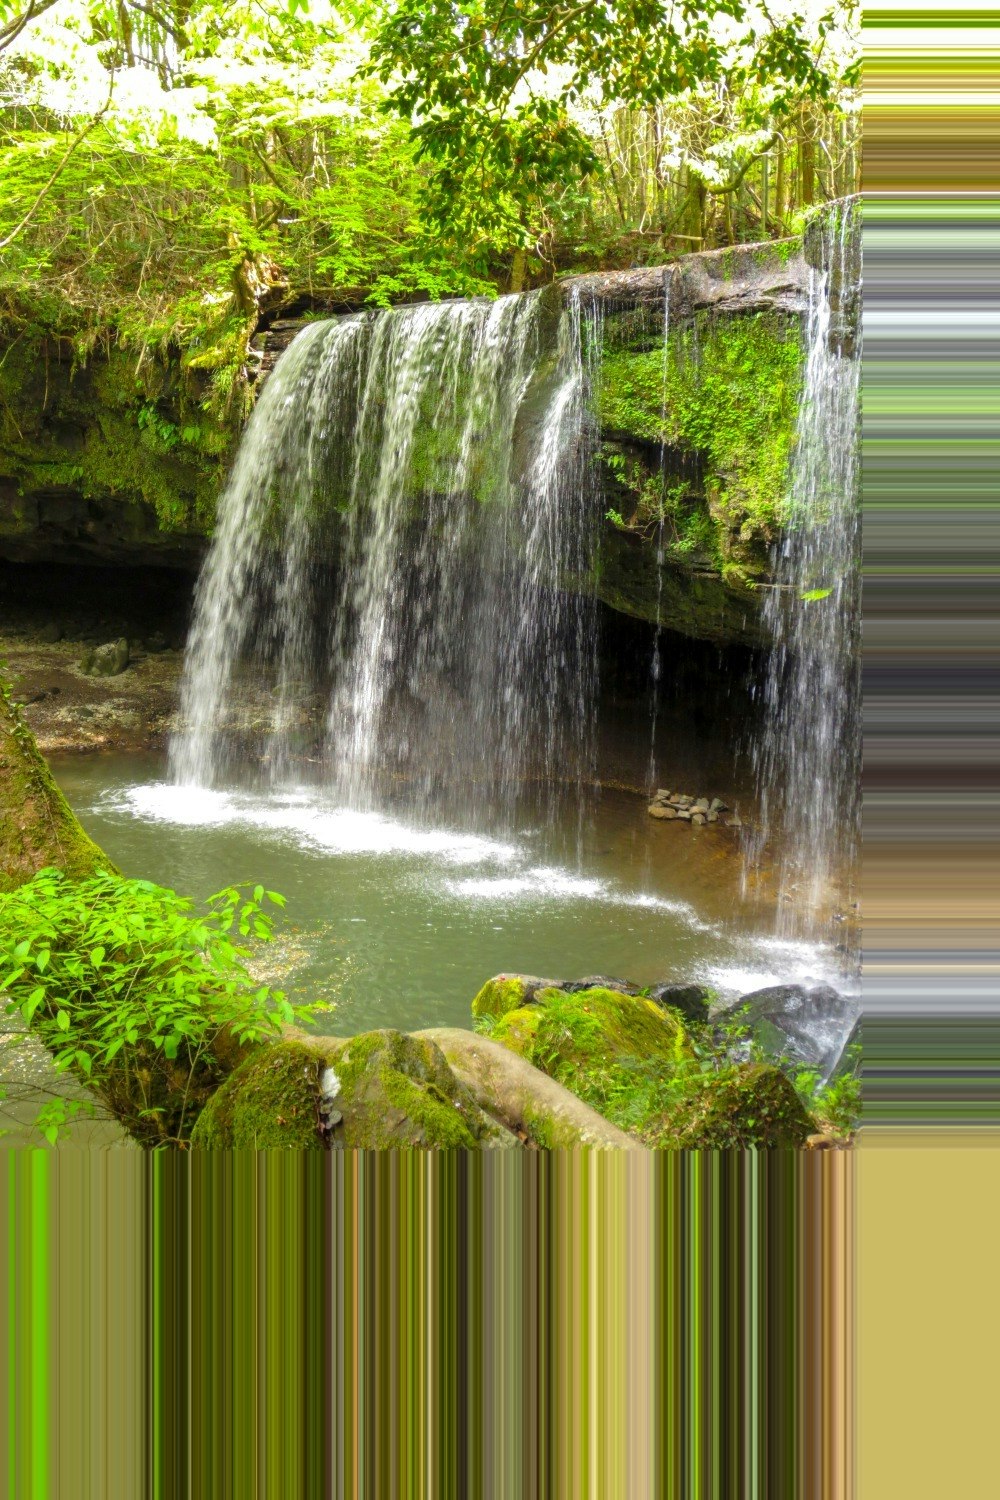 image2_pixelized.jpg